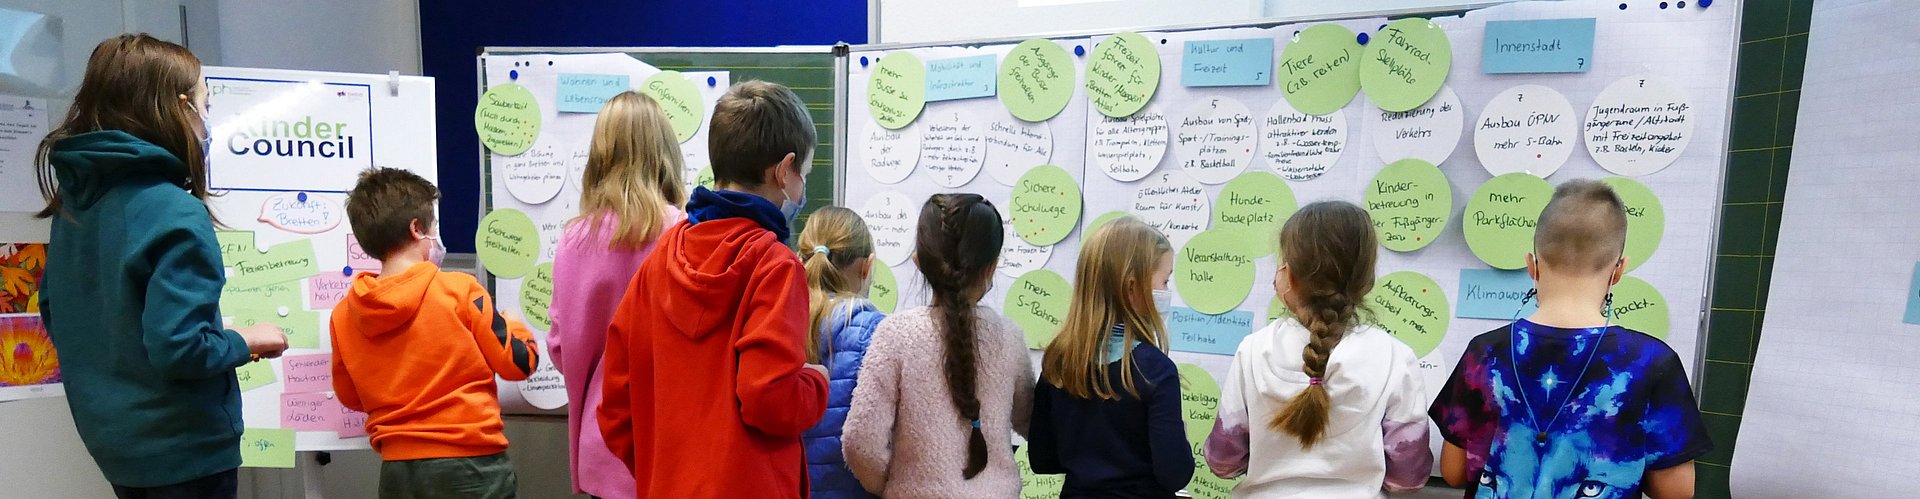 Mehrere Kinder stehen vor einer Tafel mit angehefteten Kreisen aus Papier, auf die sie ihre Ideen aufgeschrieben haben. Die Ideen werden gerade geclustert und priorisiert.